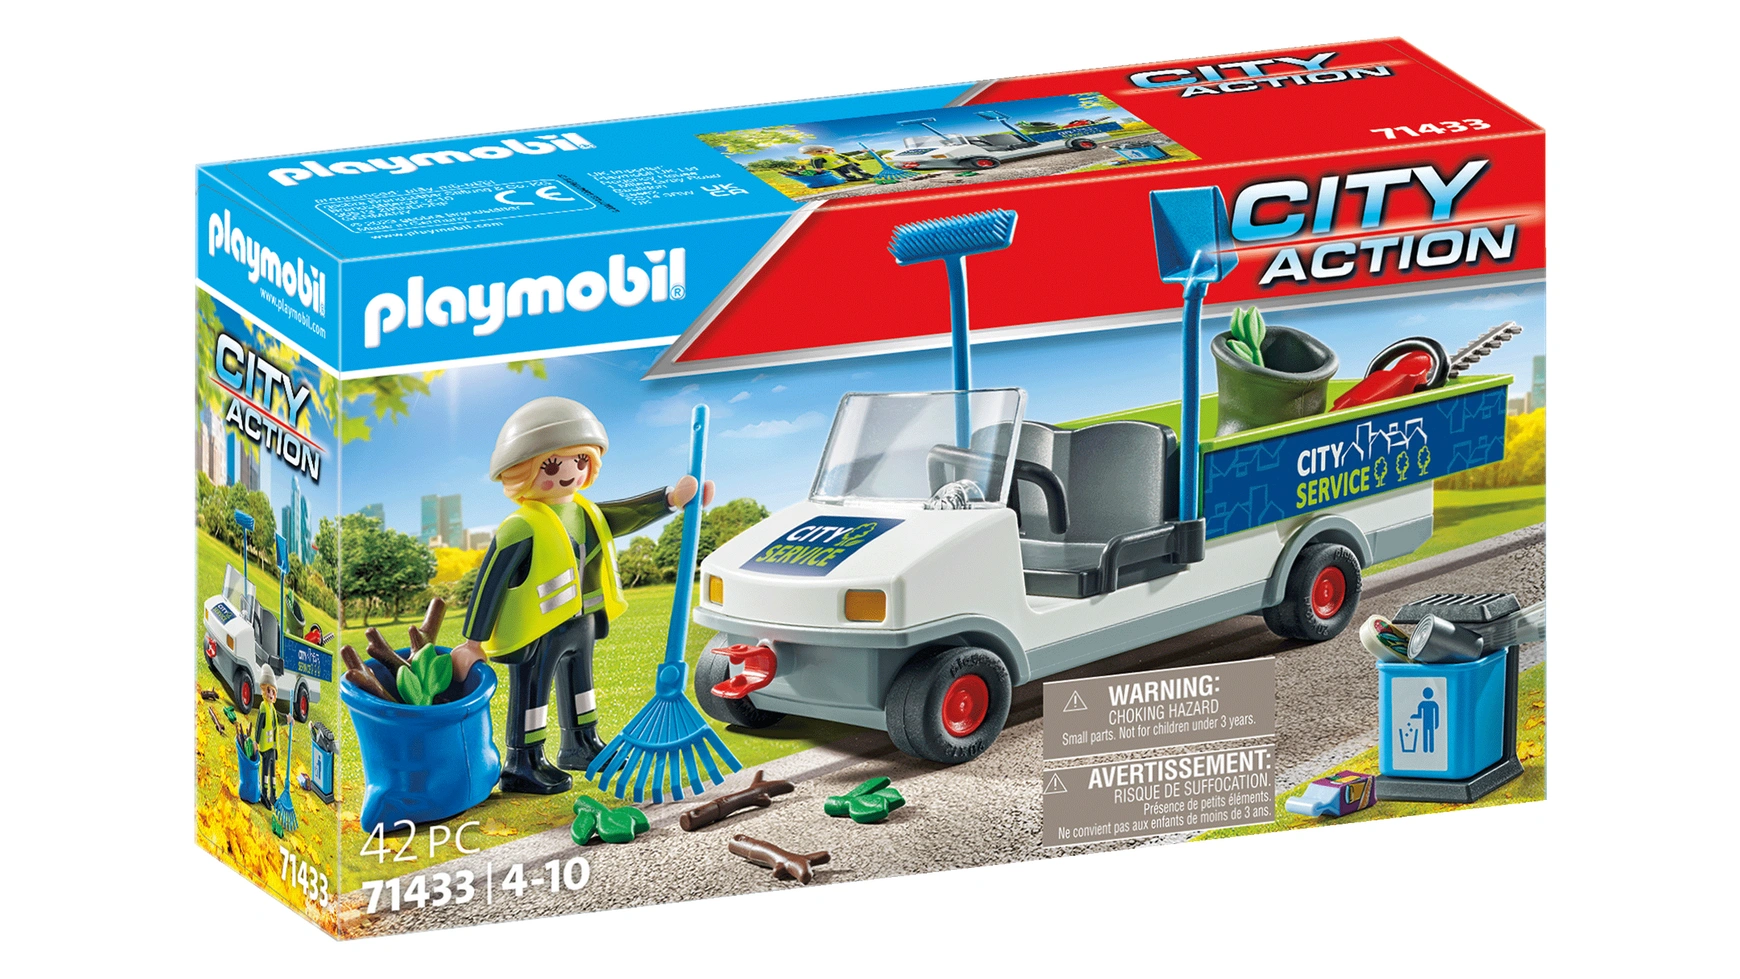 City action уборка города с помощью электромобиля Playmobil друзья playmo кикбоксер playmobil